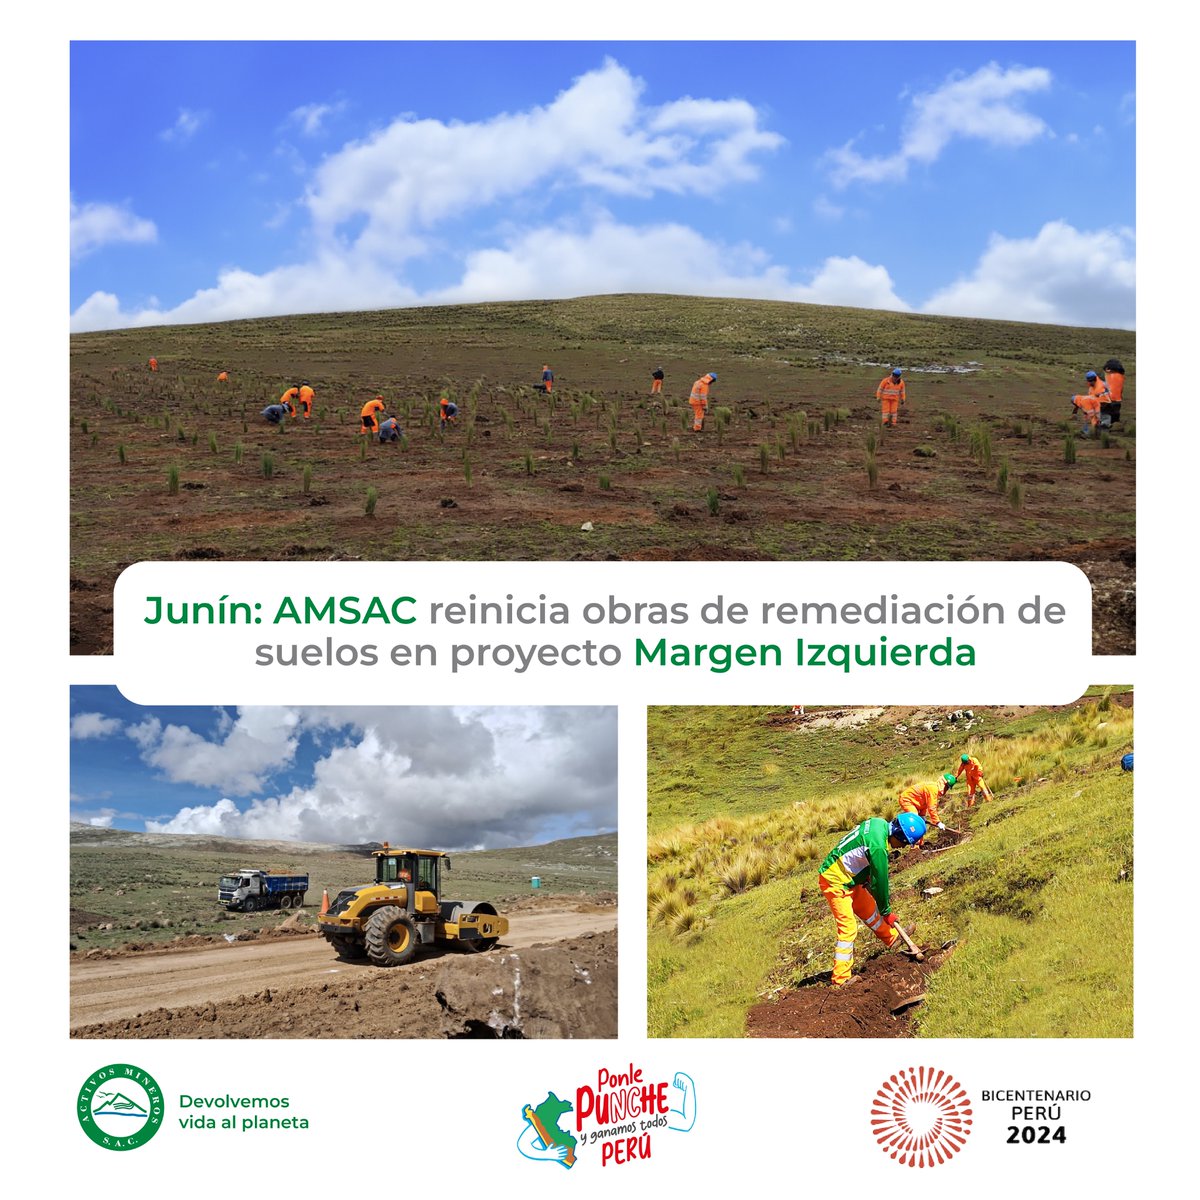 📣 #NotaDePrensa
#AMSAC reinició la ejecución de obras en el proyecto de remediación de suelos #MargenIzquierda en #LaOroya, después de una pausa debido a la seguridad por las fuertes lluvias 🌧️.​
​
✅Conoce aquí➡ bit.ly/49LyRHP​

#DevolvemosVidaAlPlaneta